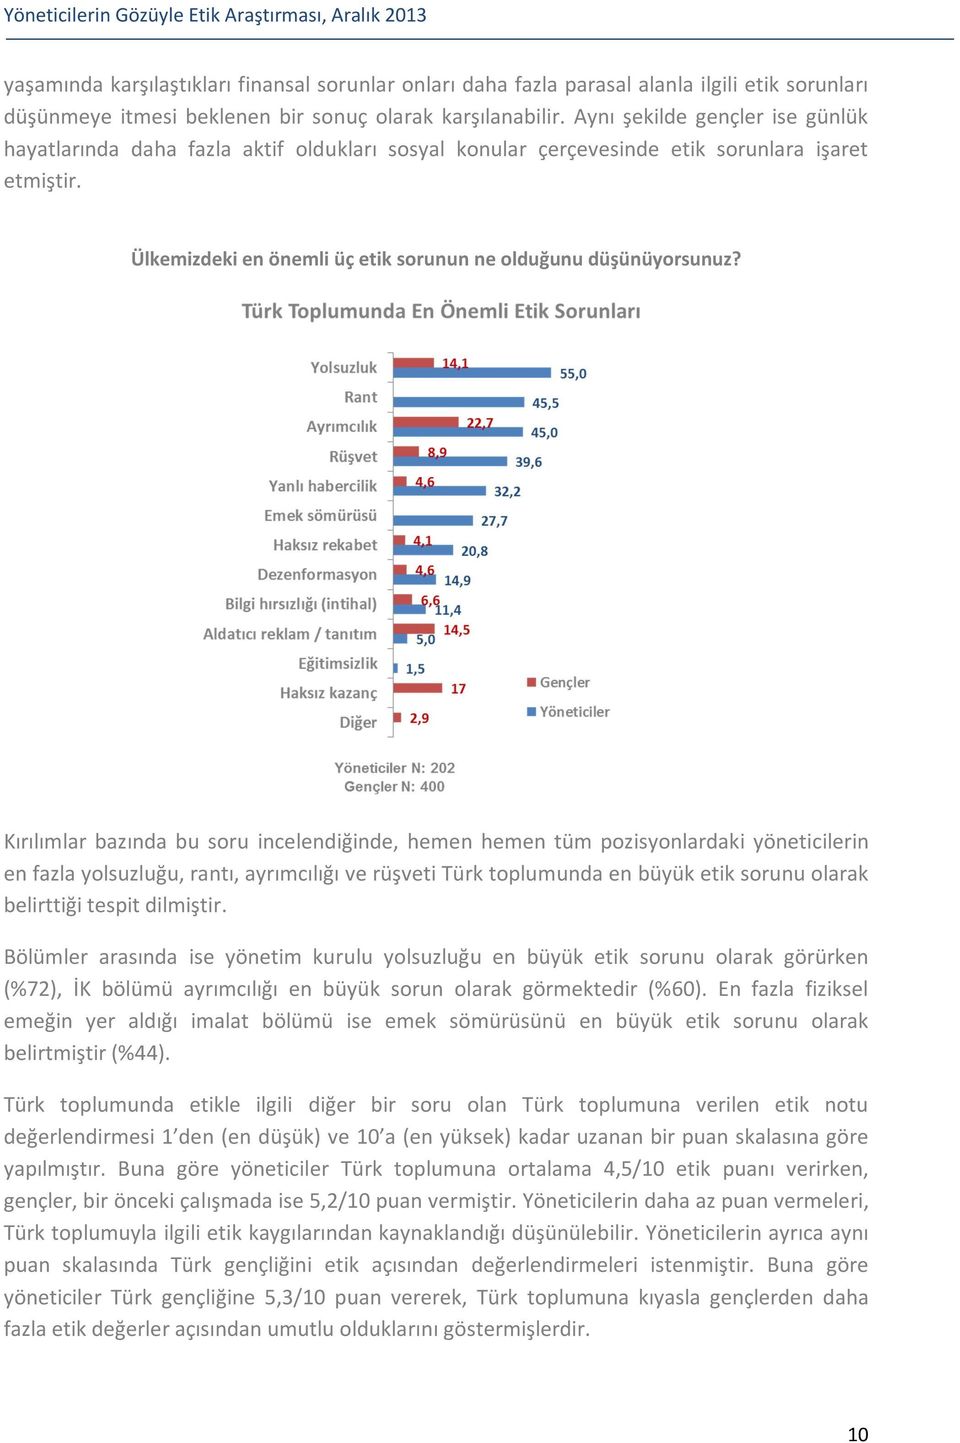 Kırılımlar bazında bu soru incelendiğinde, hemen hemen tüm pozisyonlardaki yöneticilerin en fazla yolsuzluğu, rantı, ayrımcılığı ve rüşveti Türk toplumunda en büyük etik sorunu olarak belirttiği